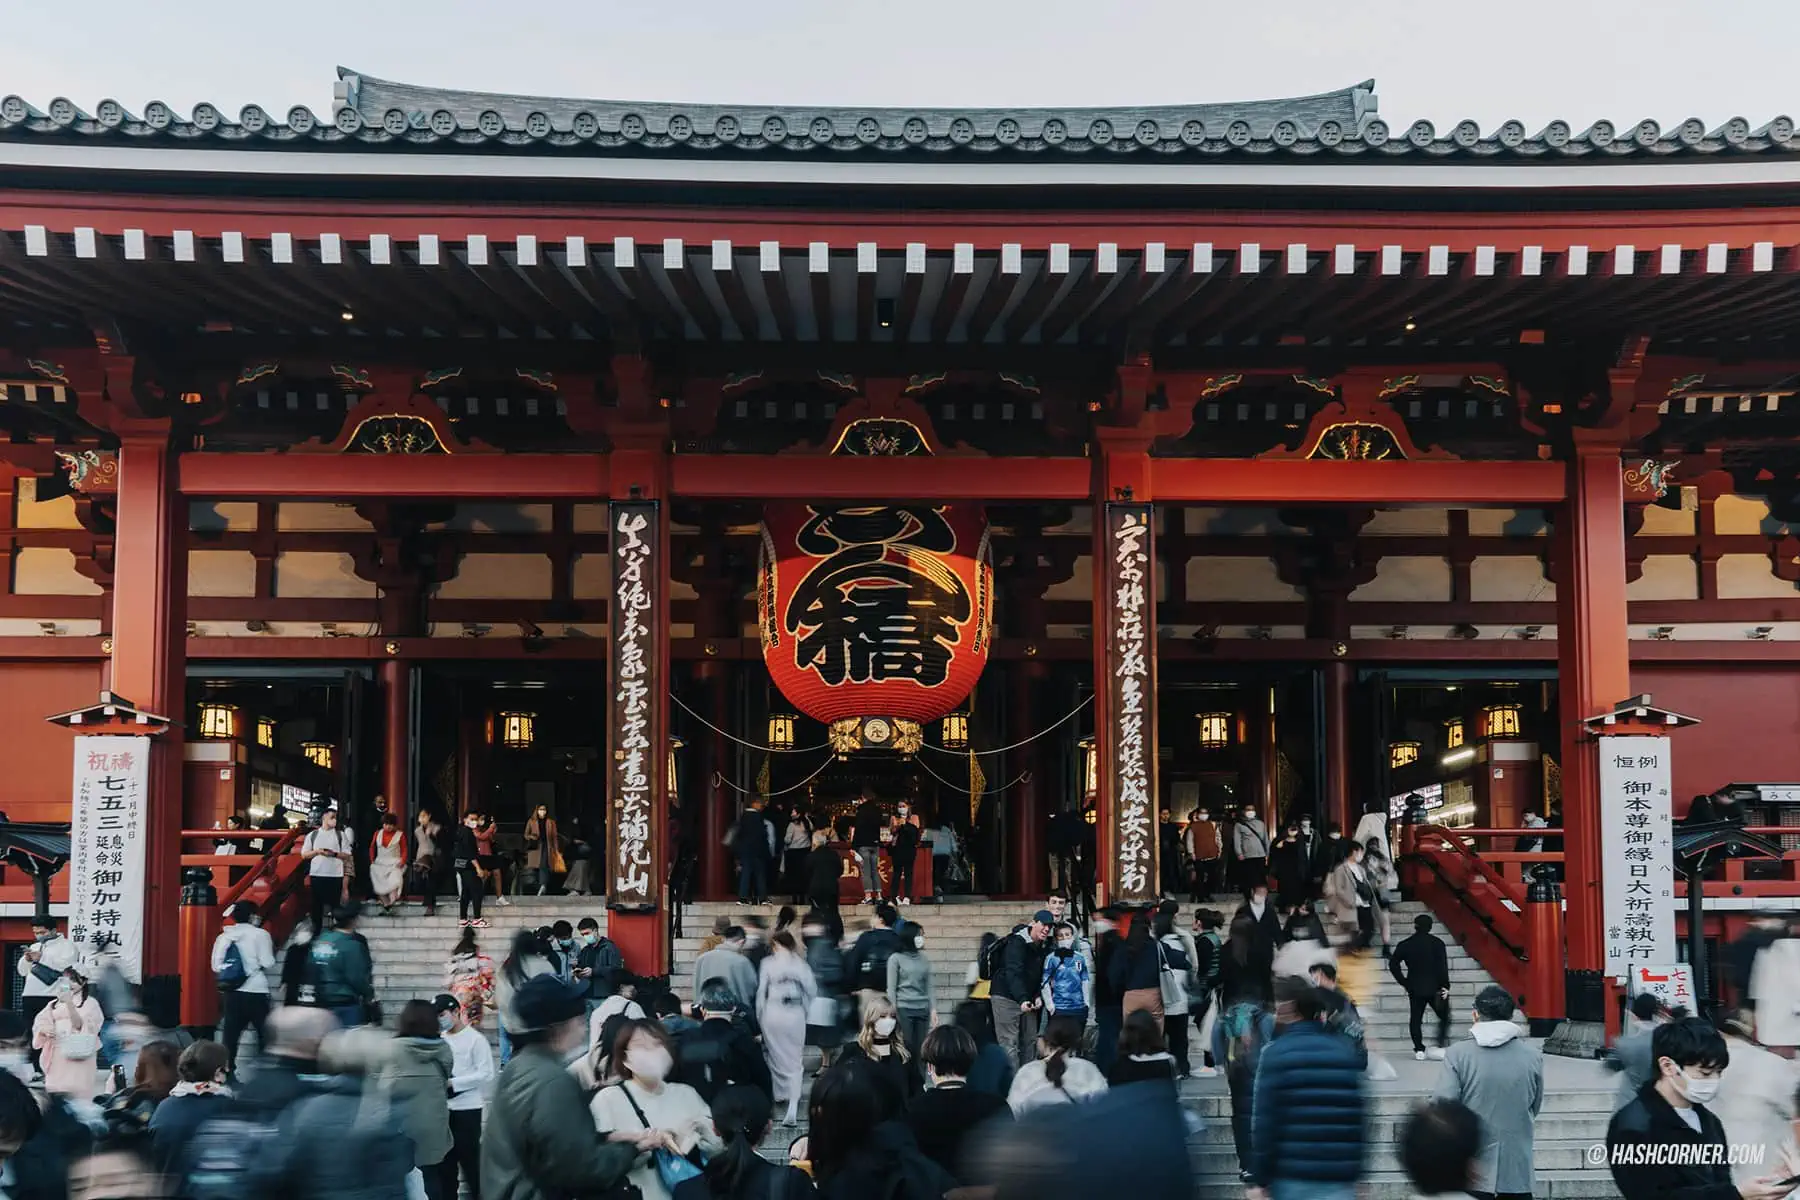 รีวิว วัดเซ็นโซจิ (Sensoji Temple) x โตเกียว วัดเก่าแก่ย่านอาซากุสะ